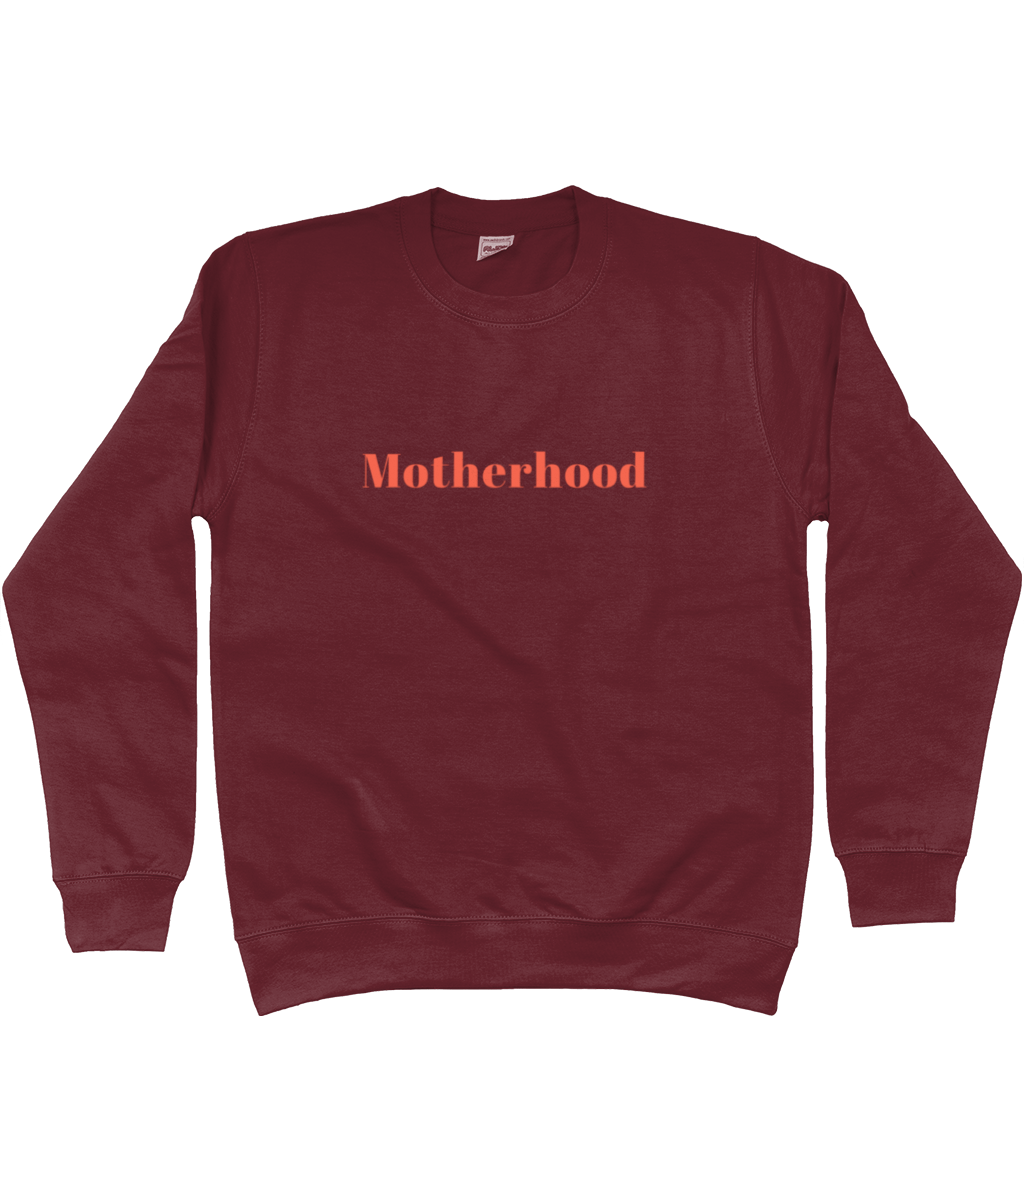 Motherhood Sweatshirt - Romance Edition